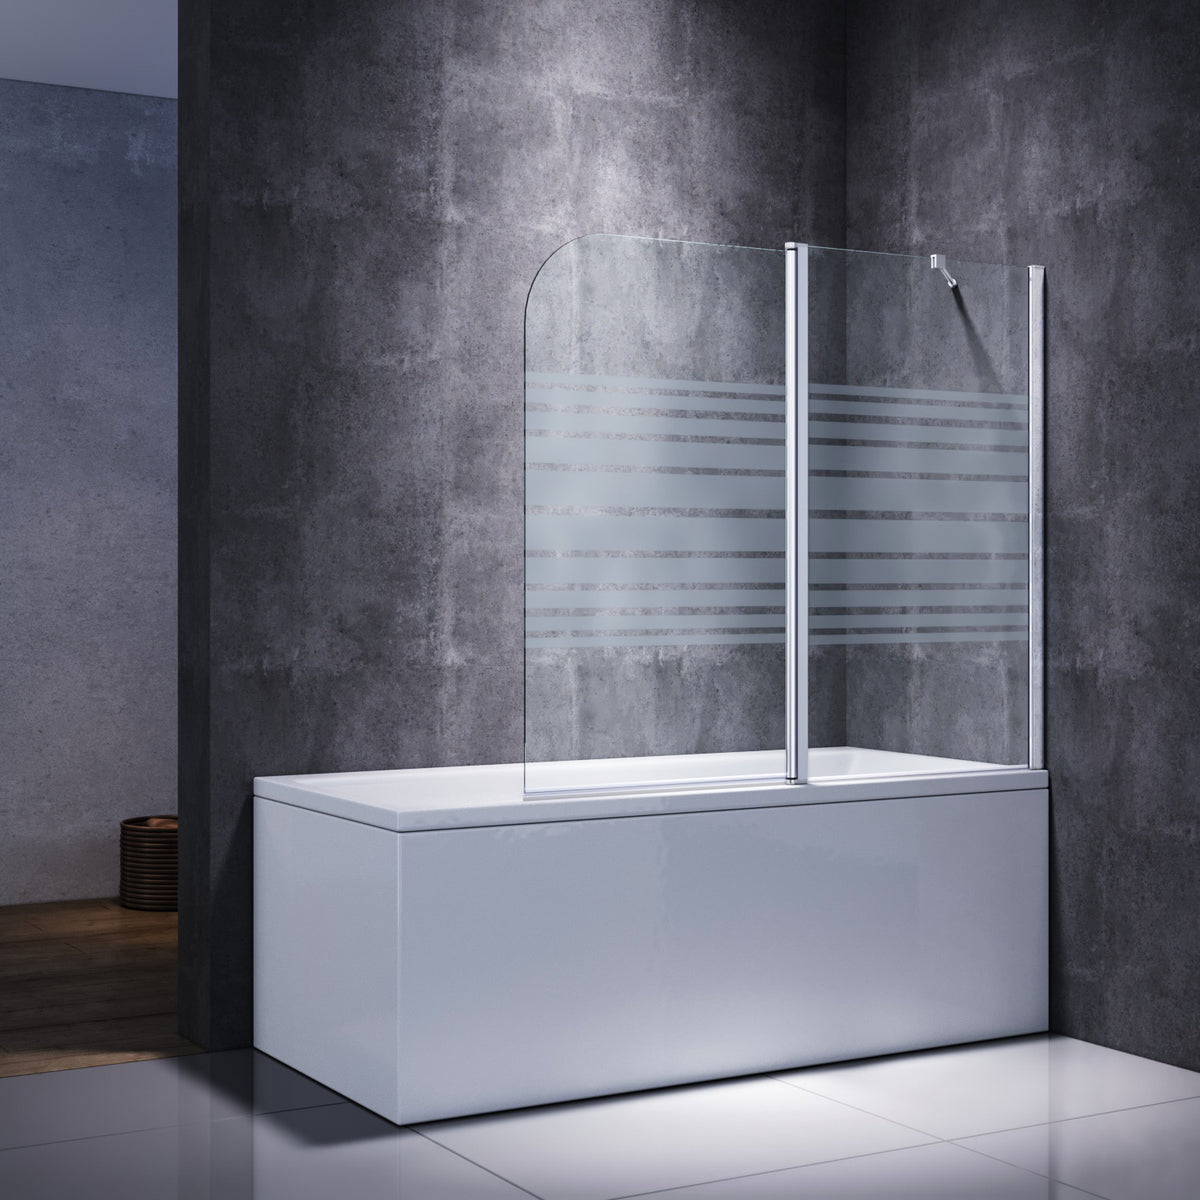 Sonni Sanitär Badewannenaufsatz 2teilig Duschwand mit Seitenteil für Badewanne Duschkabine New